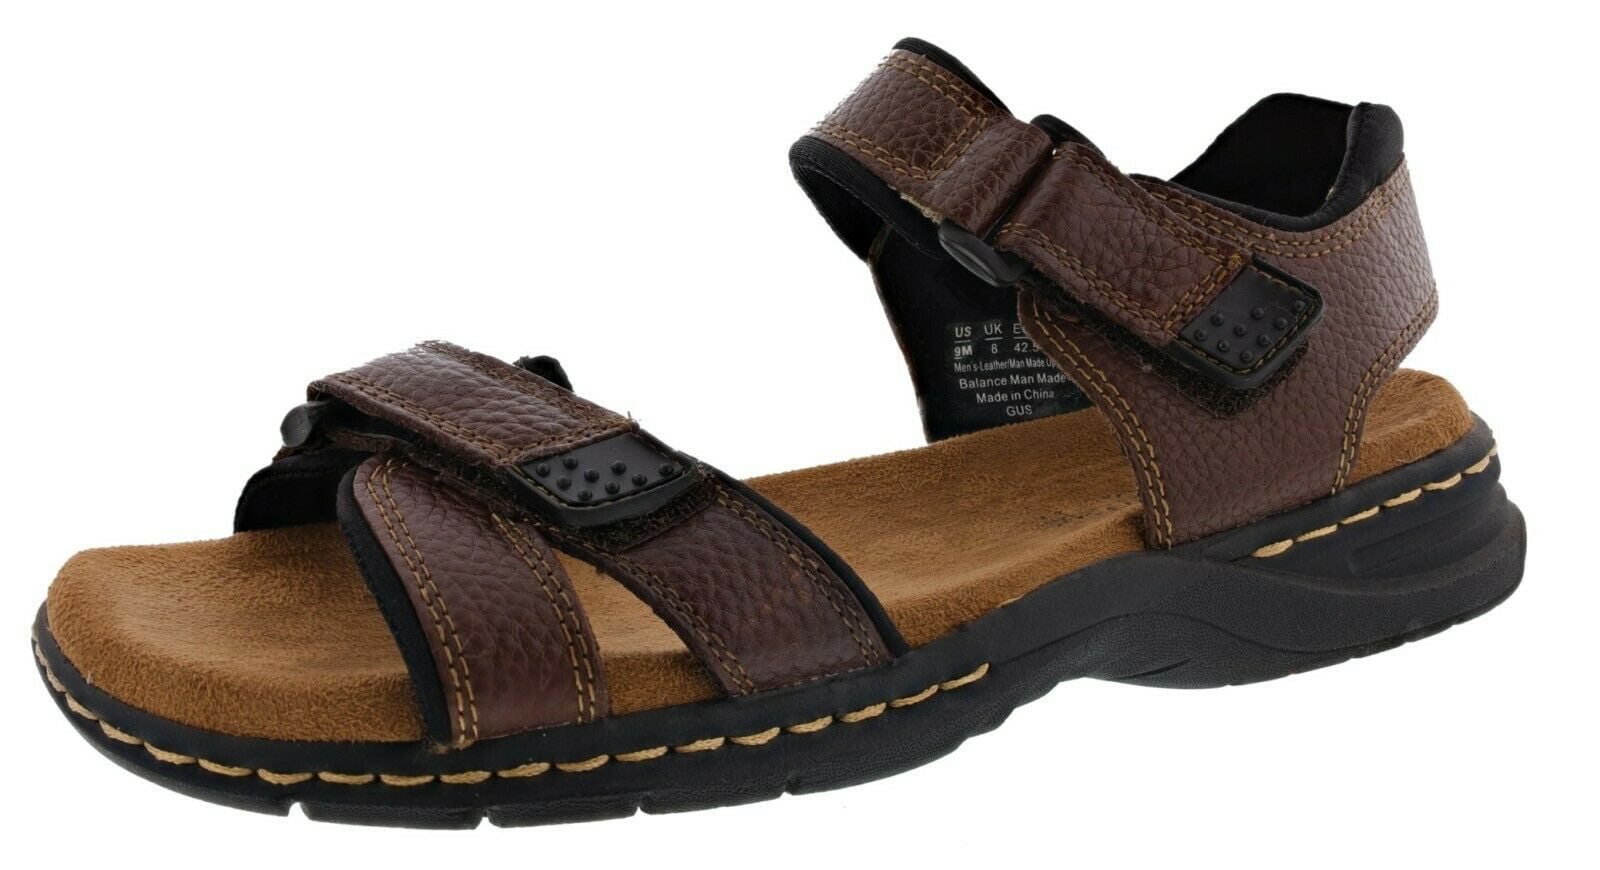 Buy Dr. Scholls Mens Gavan Adjustable Strap Sandals Online in India ...